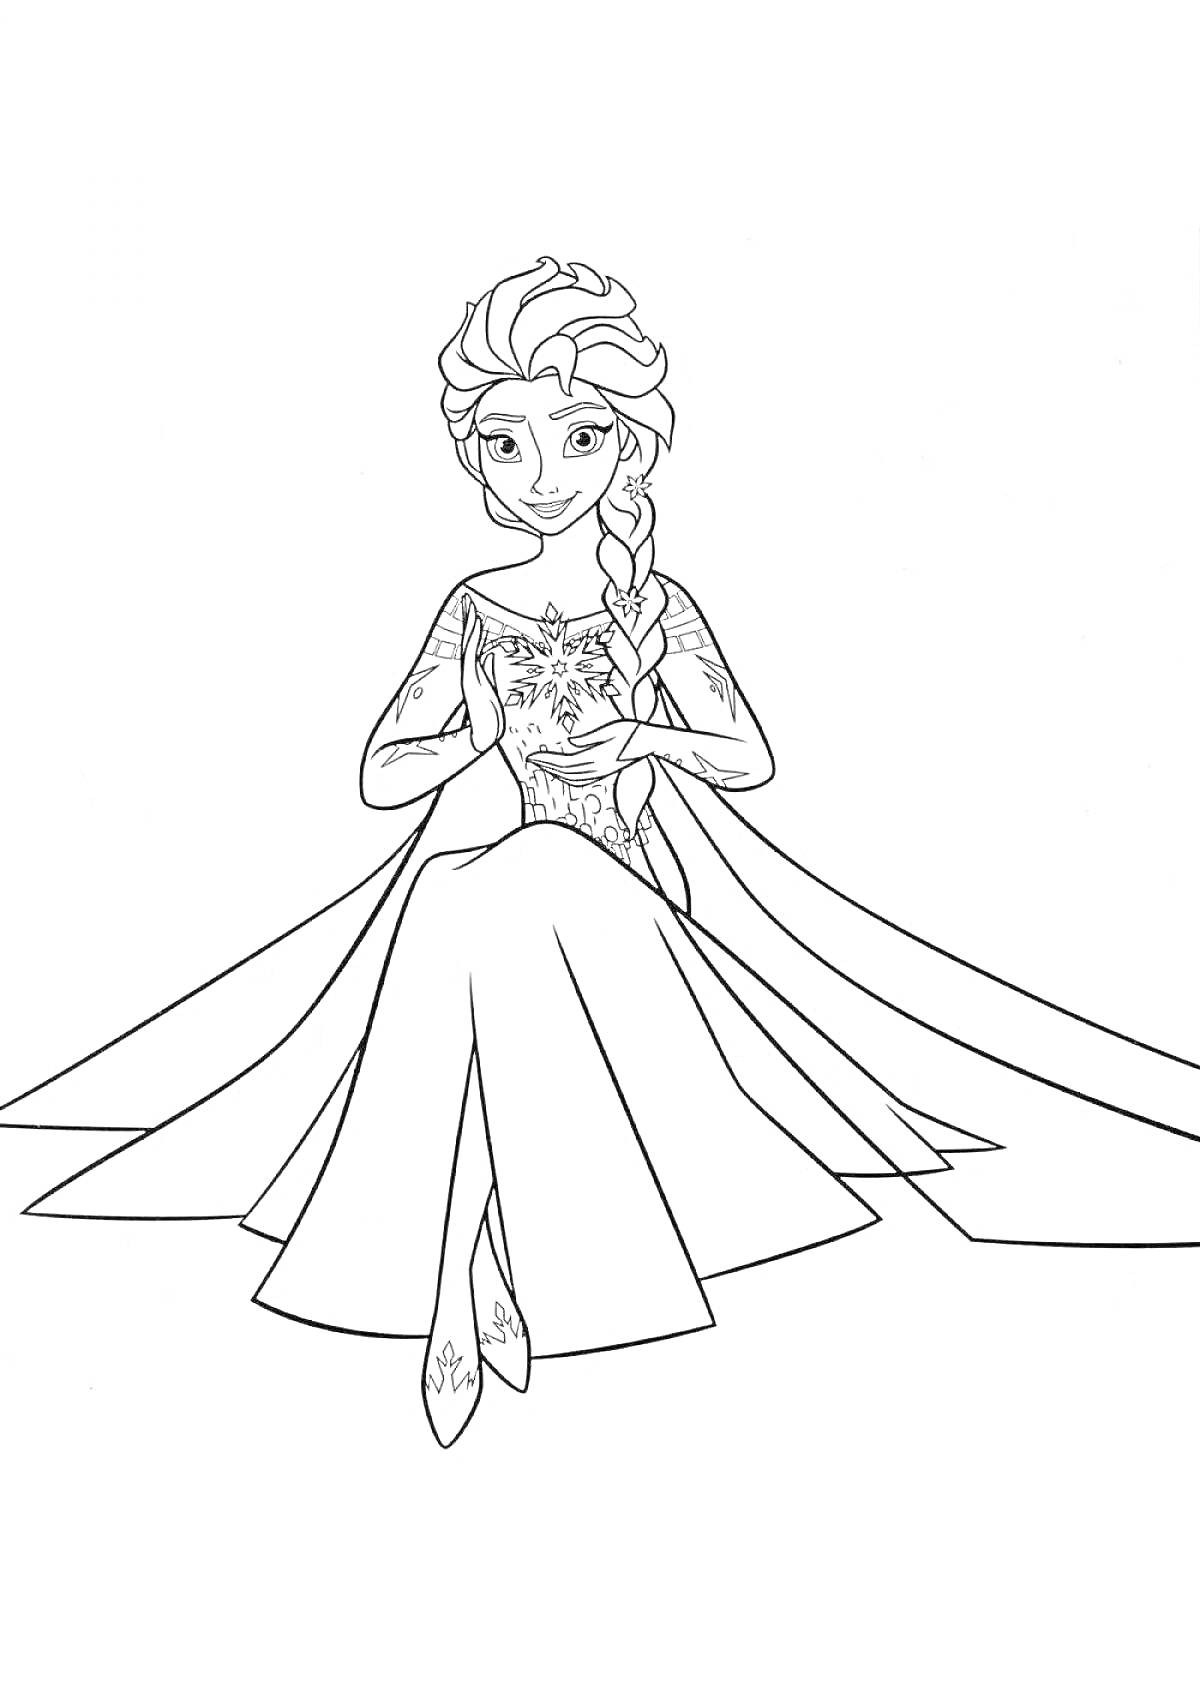 Раскраска Эльза с длинной косой и узором на платье, сидящая на полу